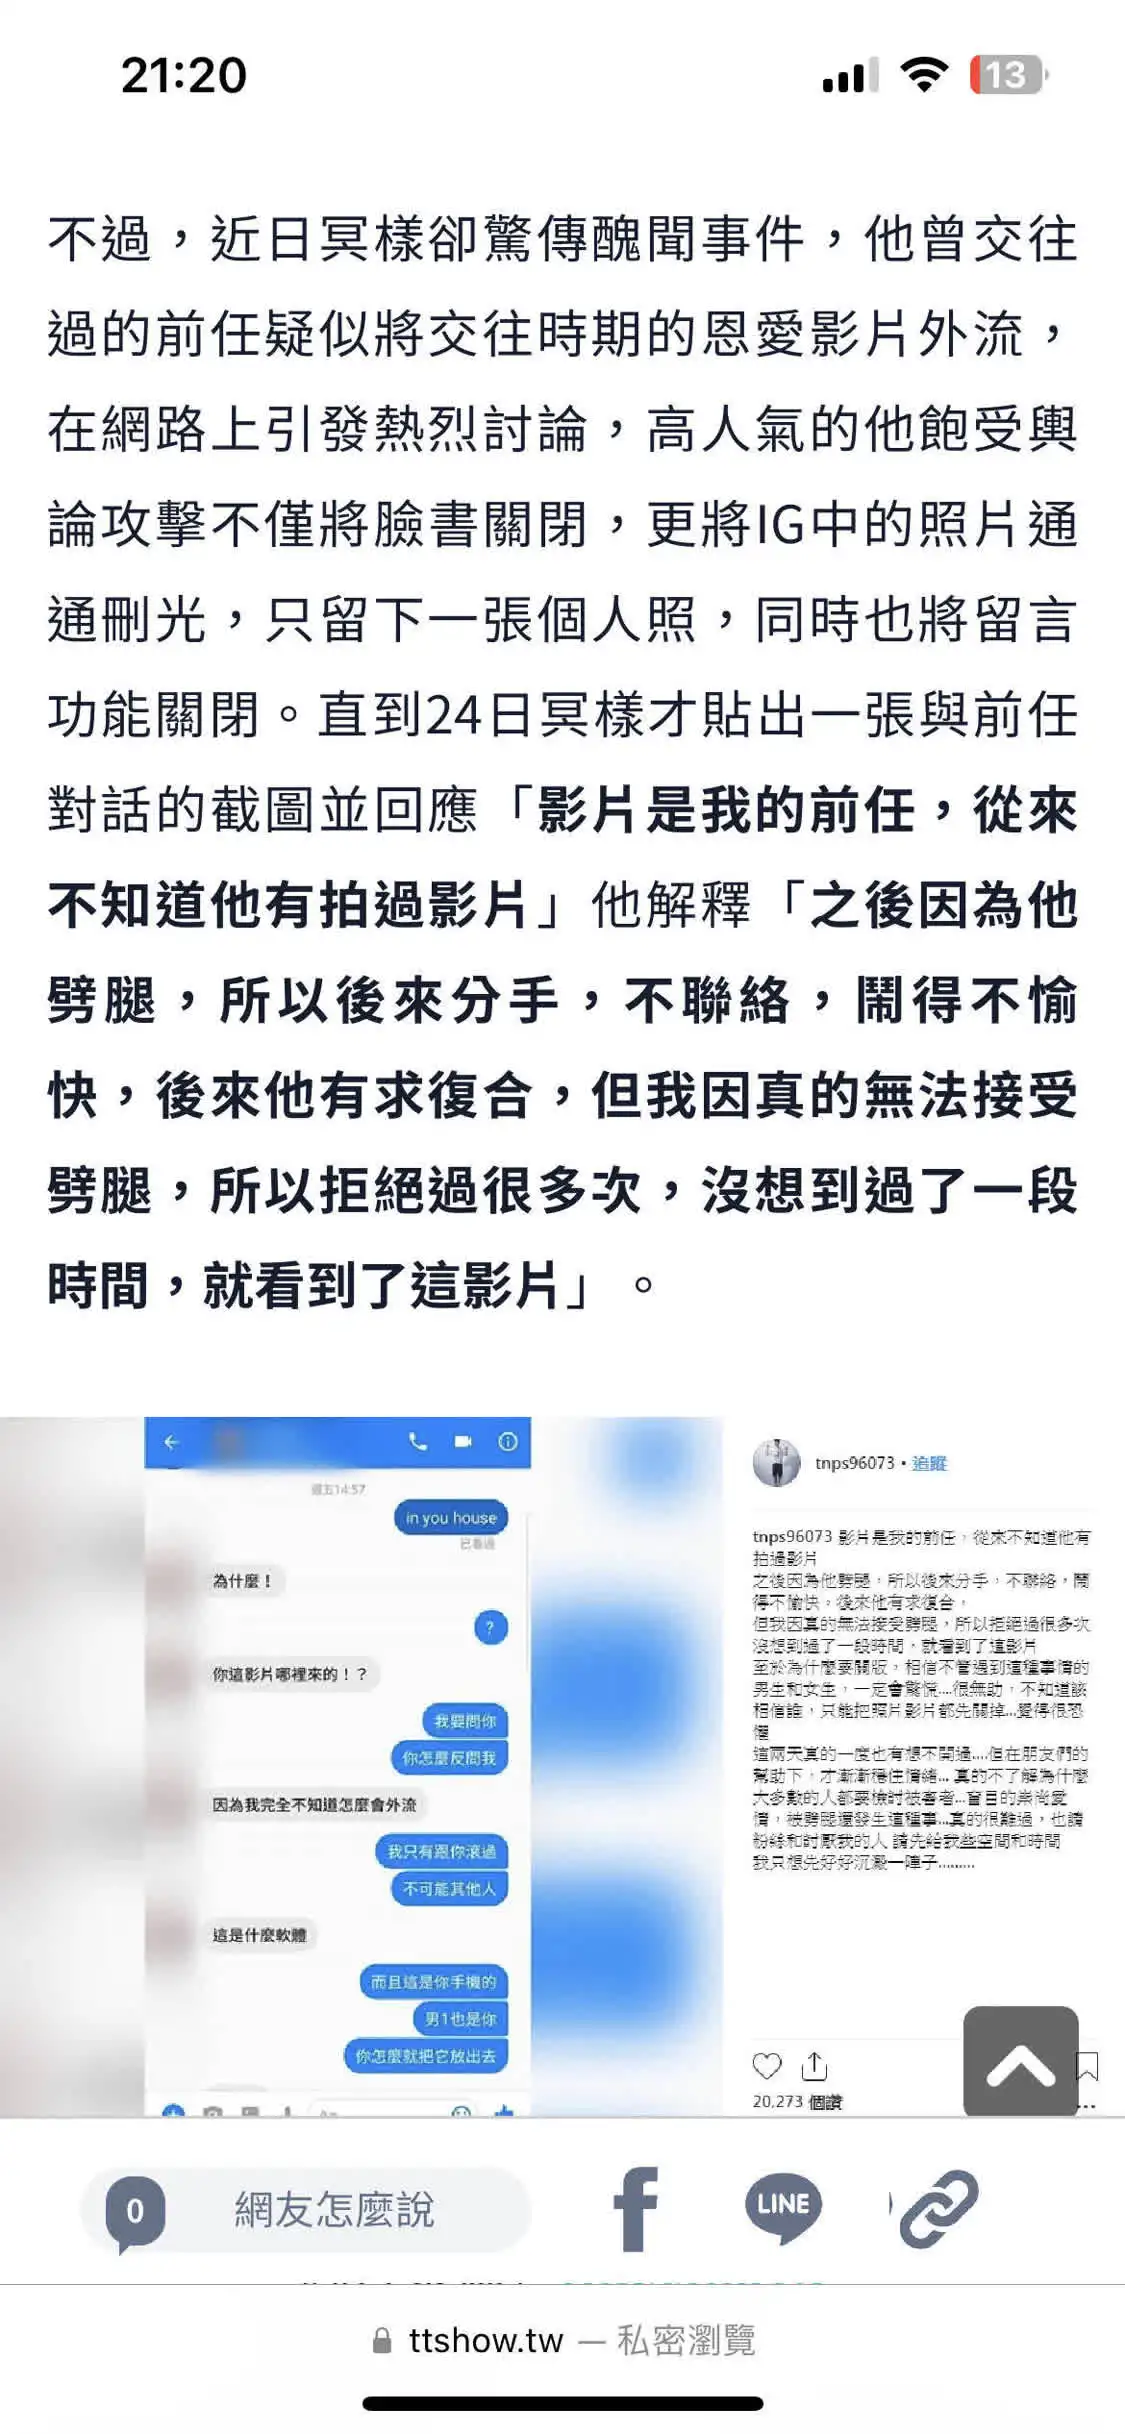 网友发长文控诉炎亚纶 称其与未成年人发生关系并拍摄视频